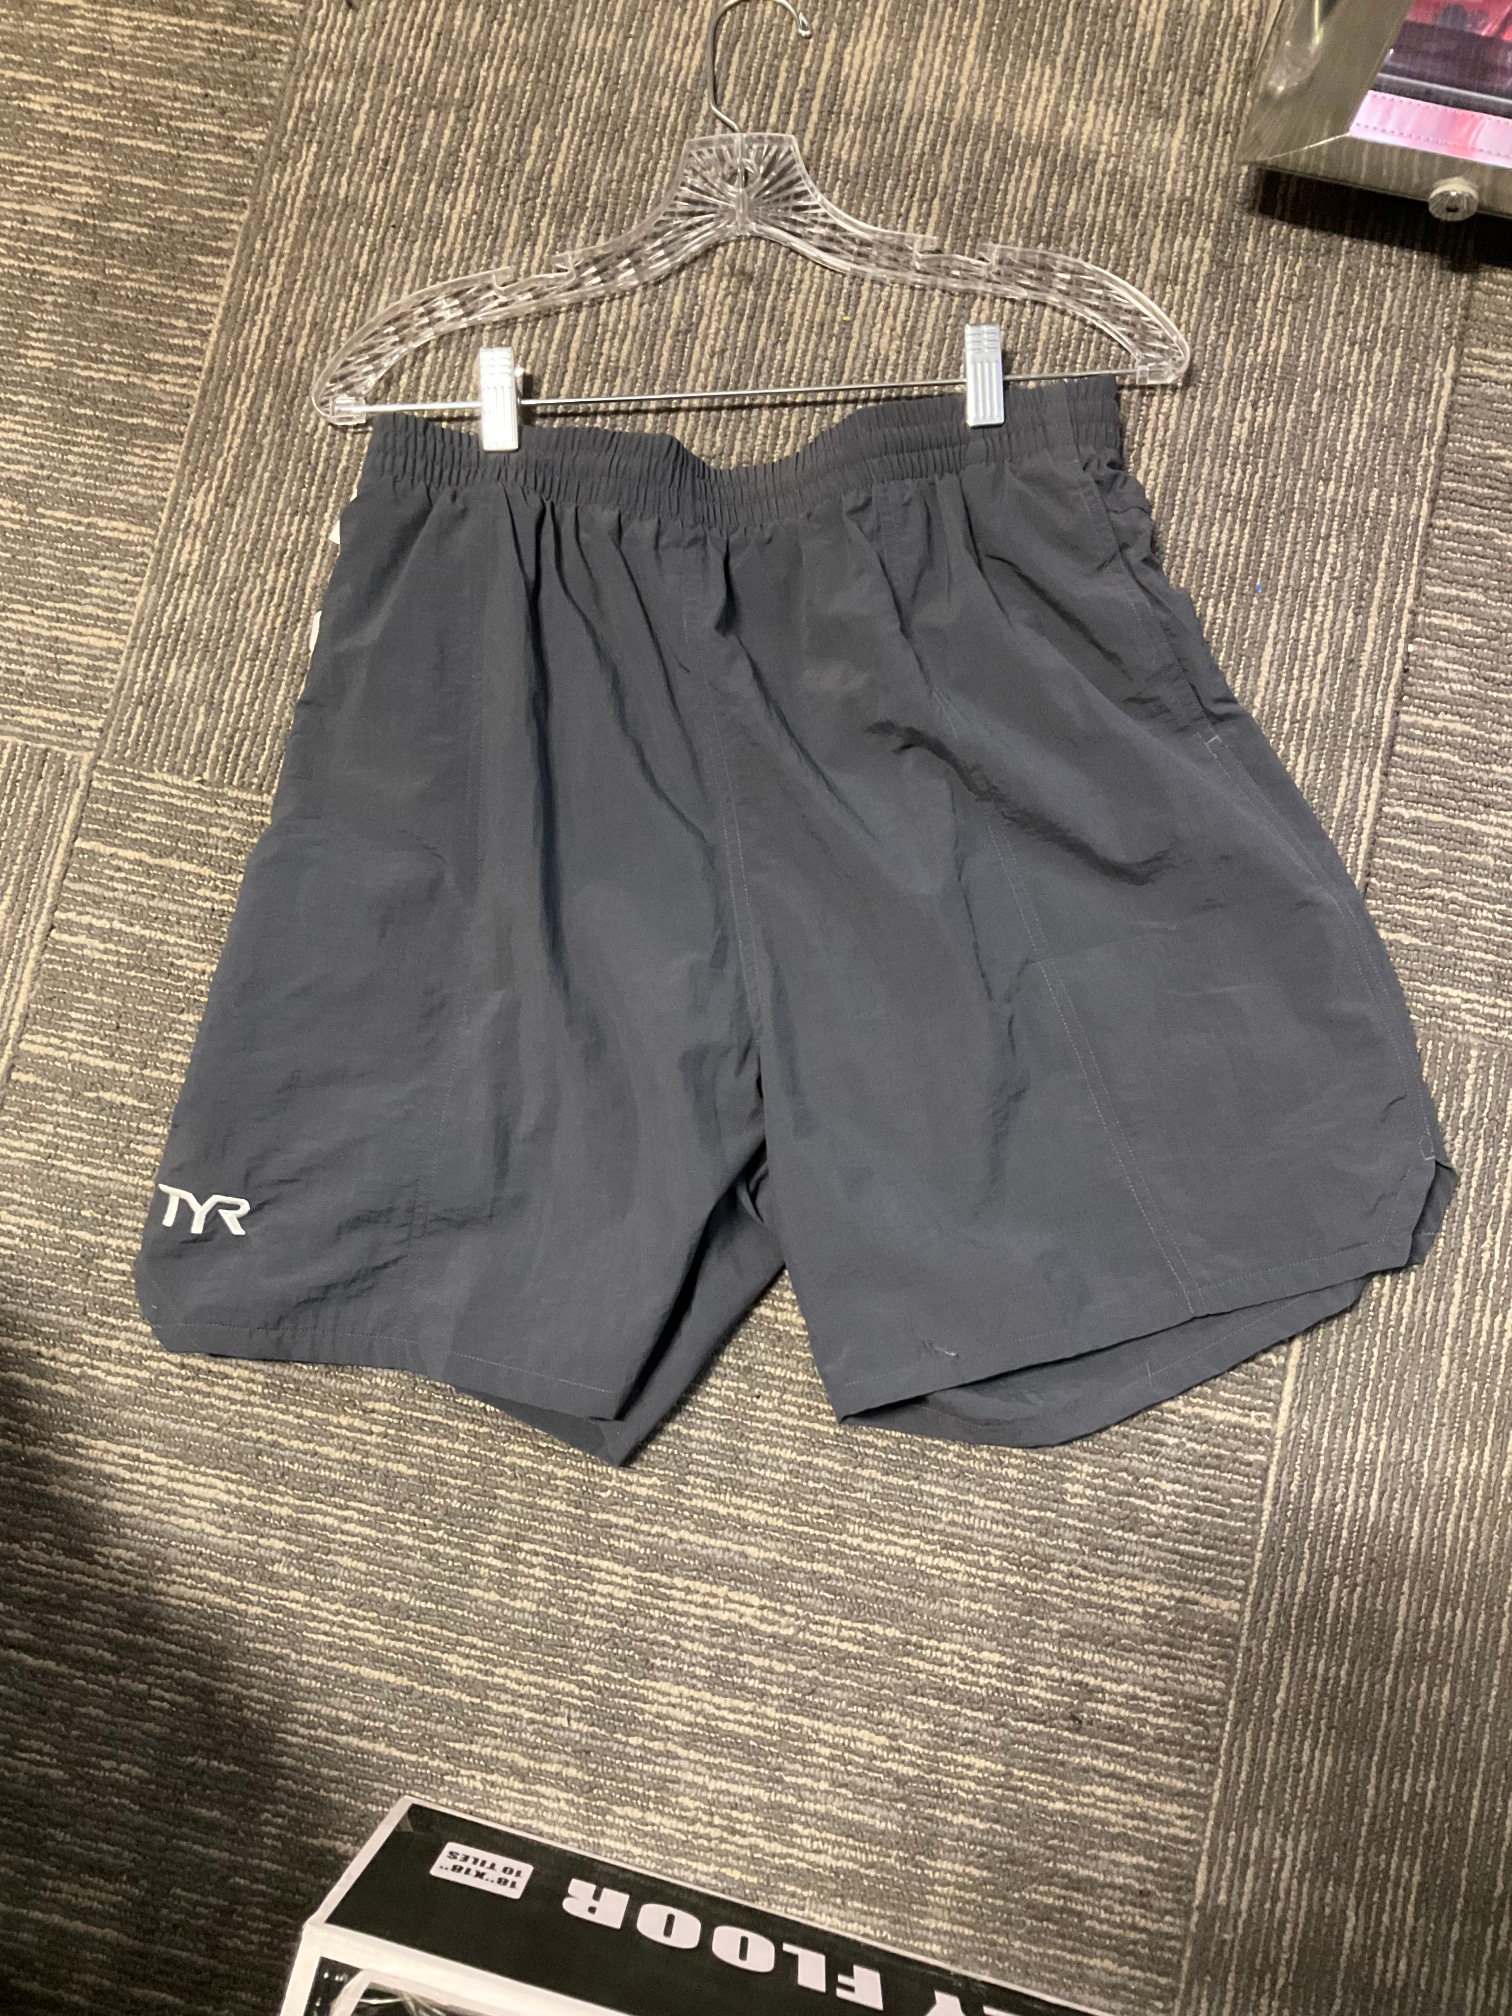 Gray New Medium Men's TYR Swimsuit